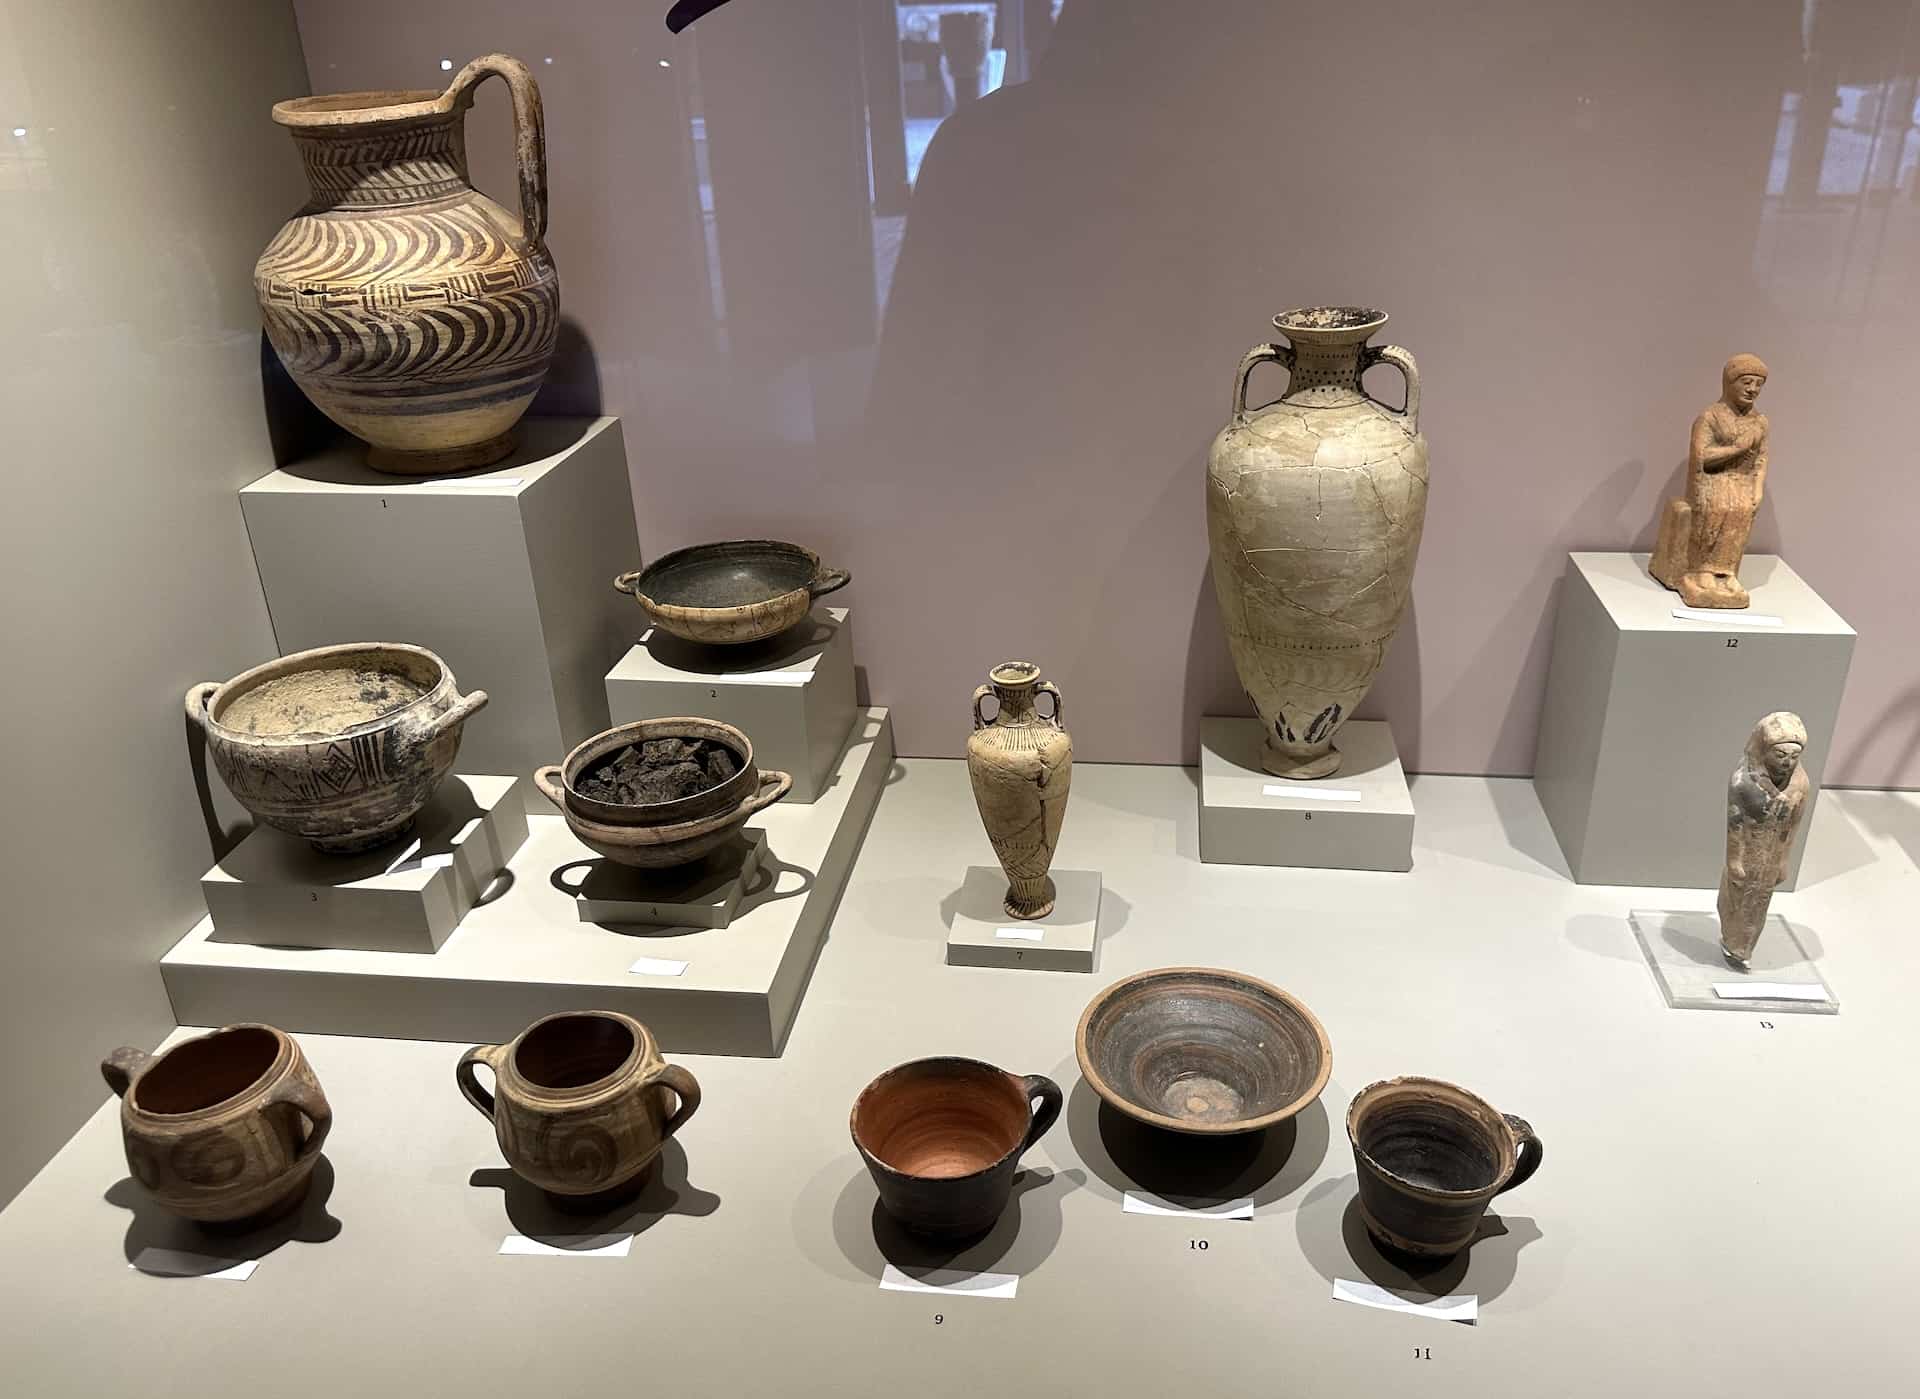 Ceramics (8th to 6th century BC) in Ephesus Through the Ages at the Ephesus Museum in Selçuk, Turkey